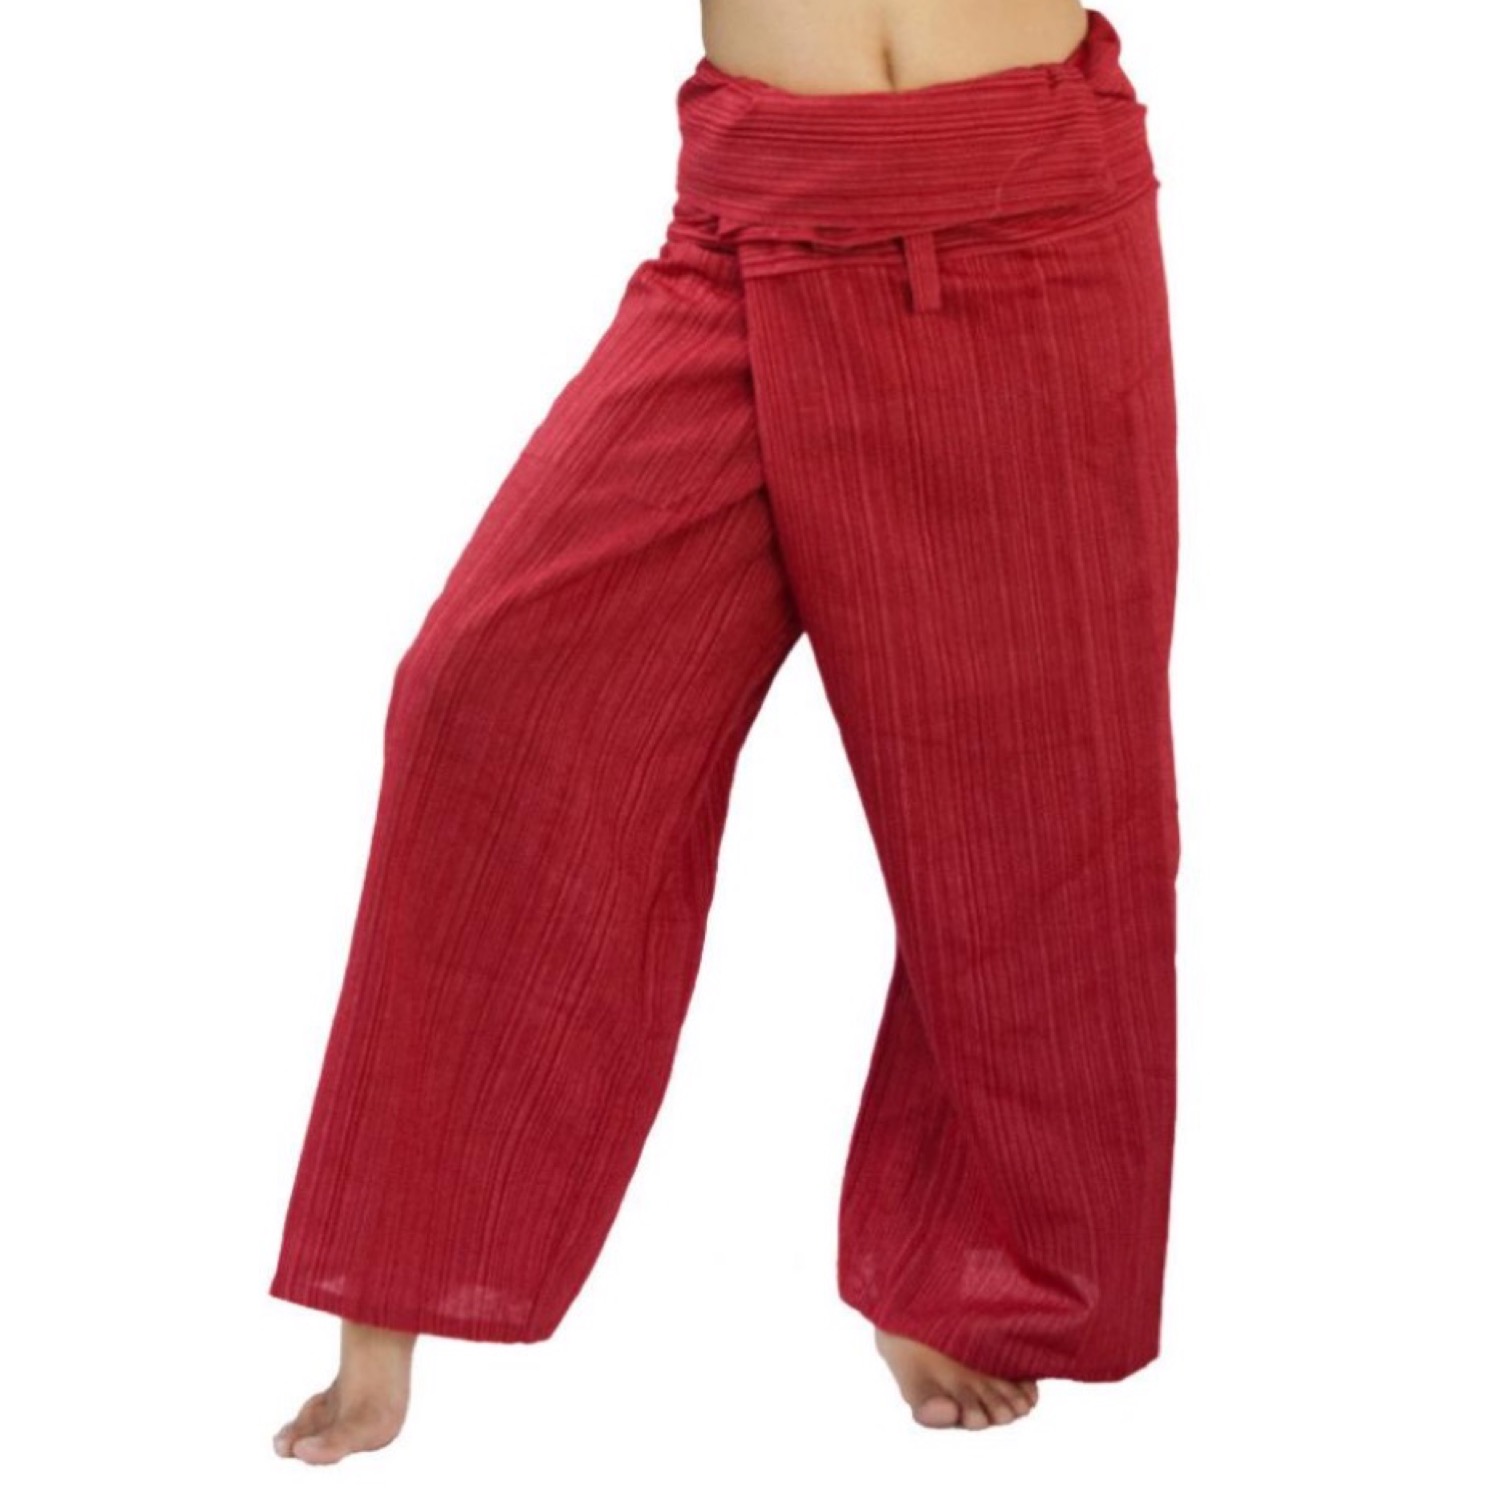 Drawstring Pants for Men 100% Cotton Gauze. Natural Color.